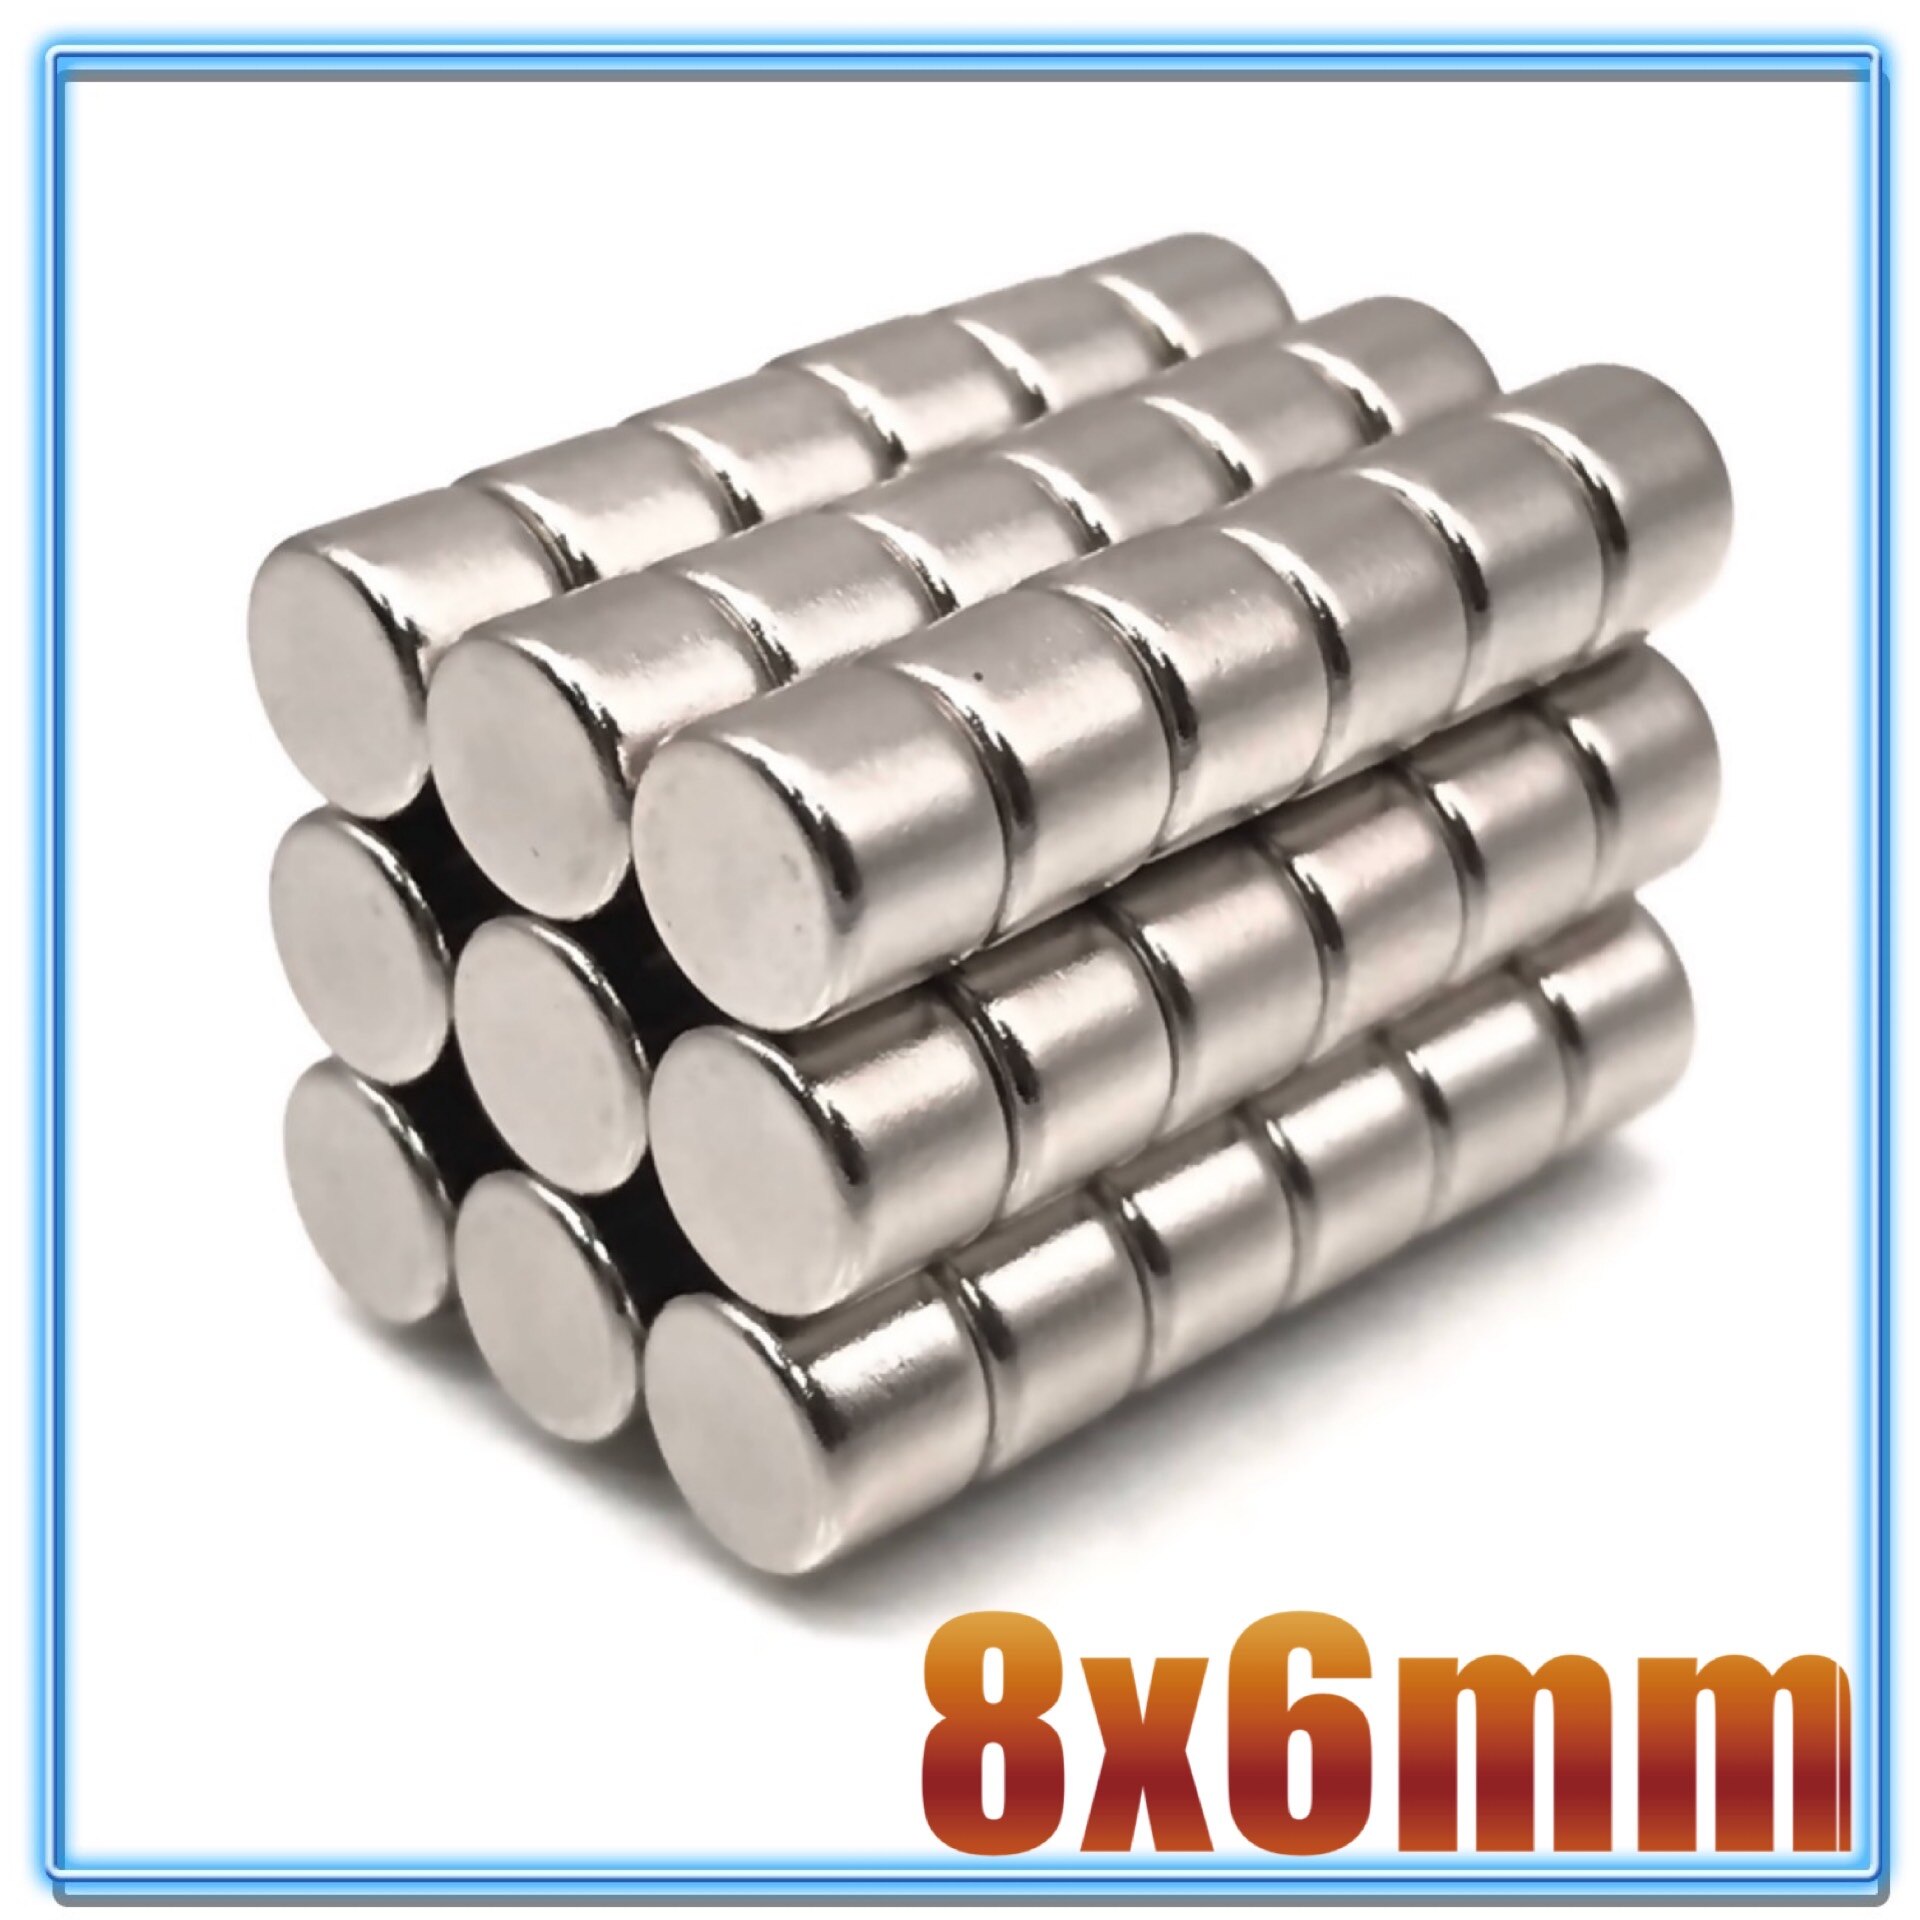 100 stk  n35 rund magnet 8 x 1 8 x 1.5 8 x 2 8 x 3 8 x 4 8 x 5 8 x 6 8 x 10 mm neodymmagnet permanent ndfeb superstærke kraftige magneter: 8 x 6(100 stk)